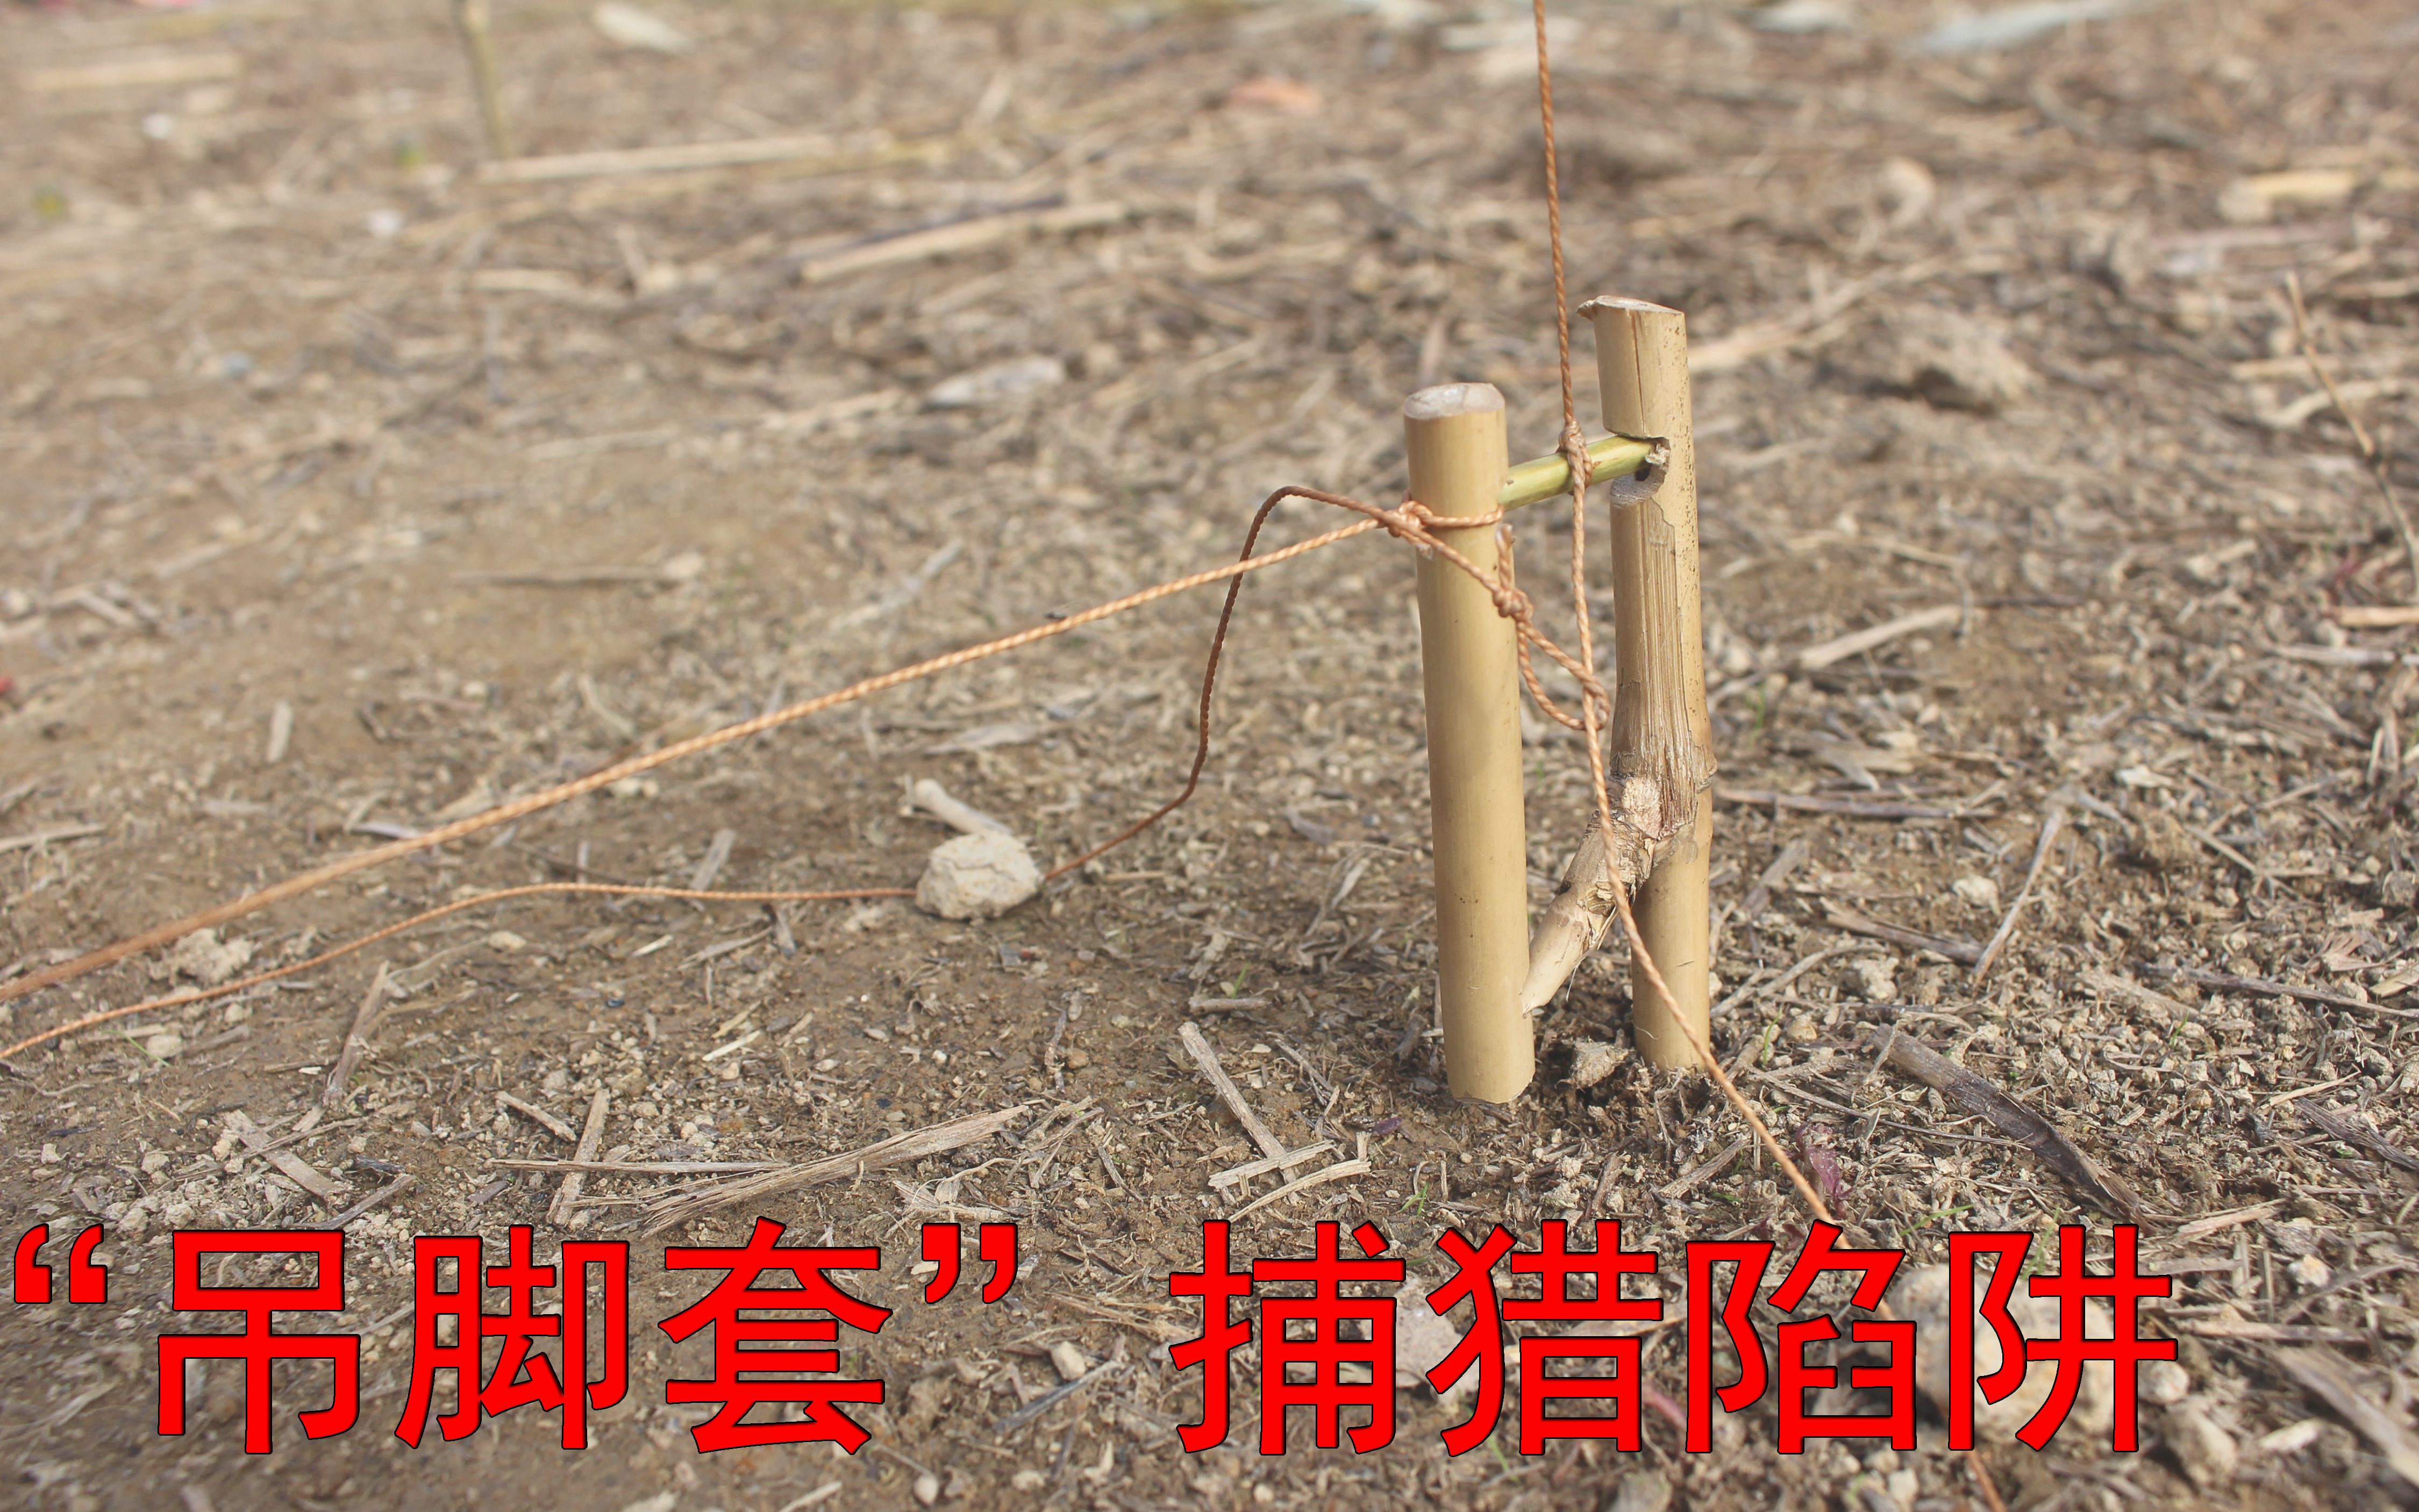 捕鸽神器鸽笼不捕全动天落大笼耐用抓养进鸽的大笼子专不用出-Taobao